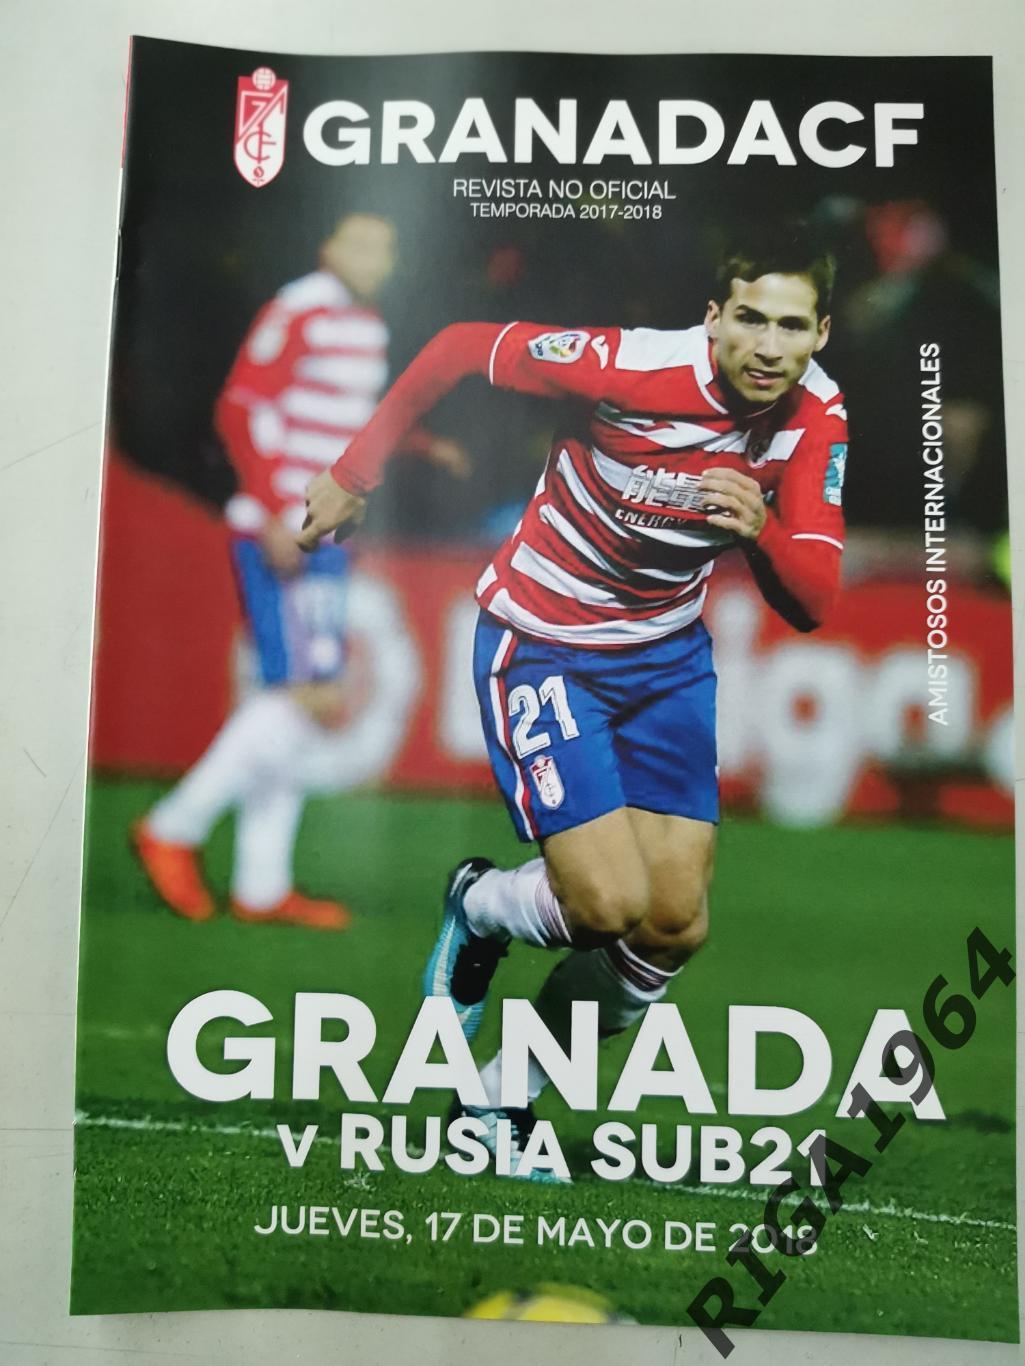 Товарищеский матч Гранада Испания - Россия U-21 (17/05/2018- Кампоаморе)